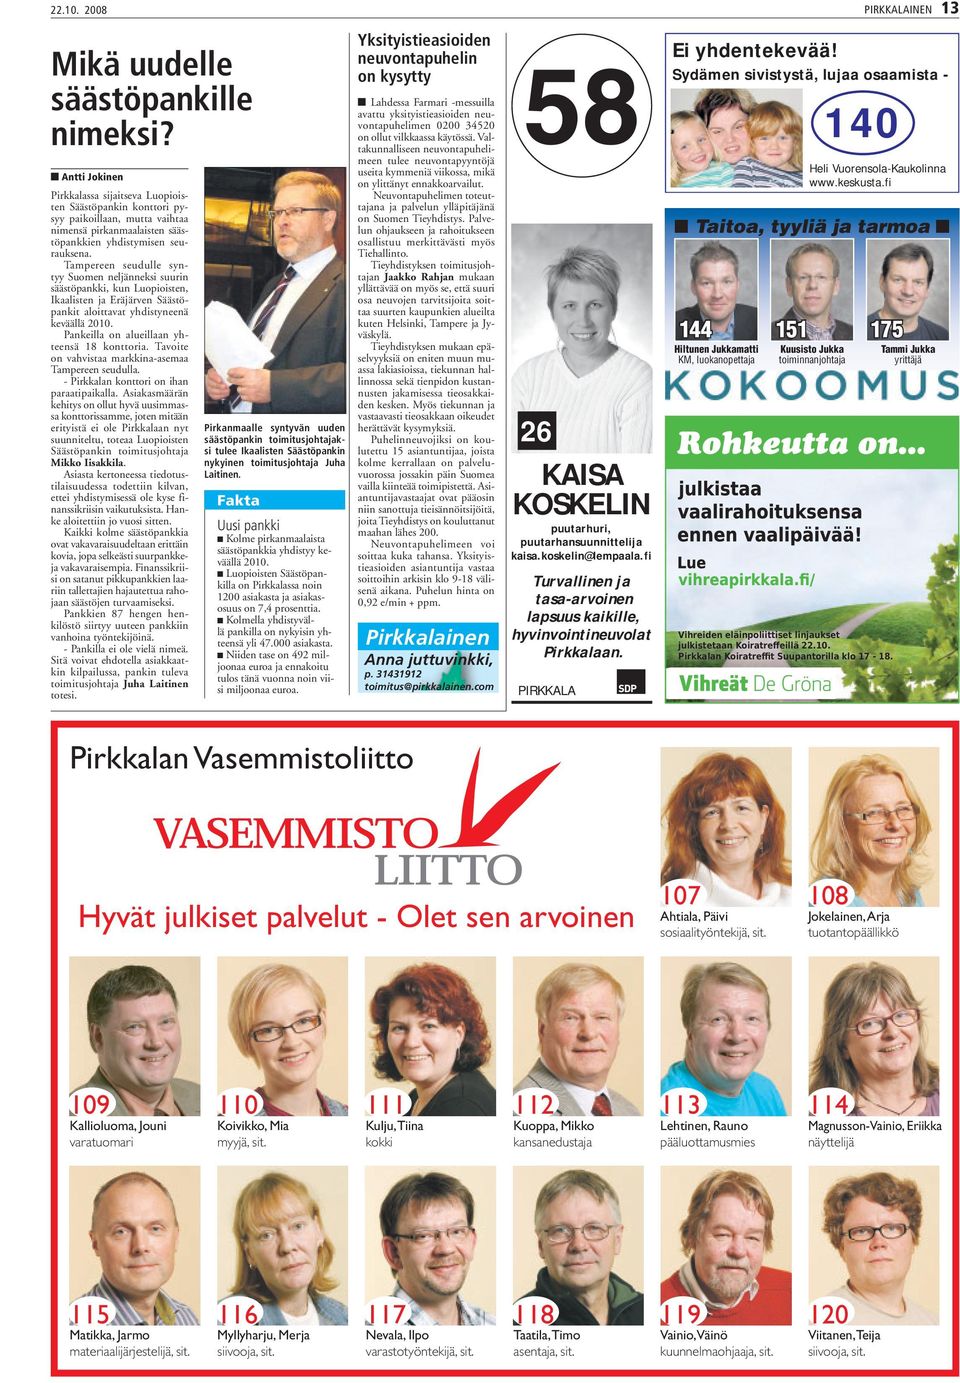 Tampereen seudulle syntyy Suomen neljänneksi suurin säästöpankki, kun Luopioisten, Ikaalisten ja Eräjärven Säästöpankit aloittavat yhdistyneenä keväällä 2010.